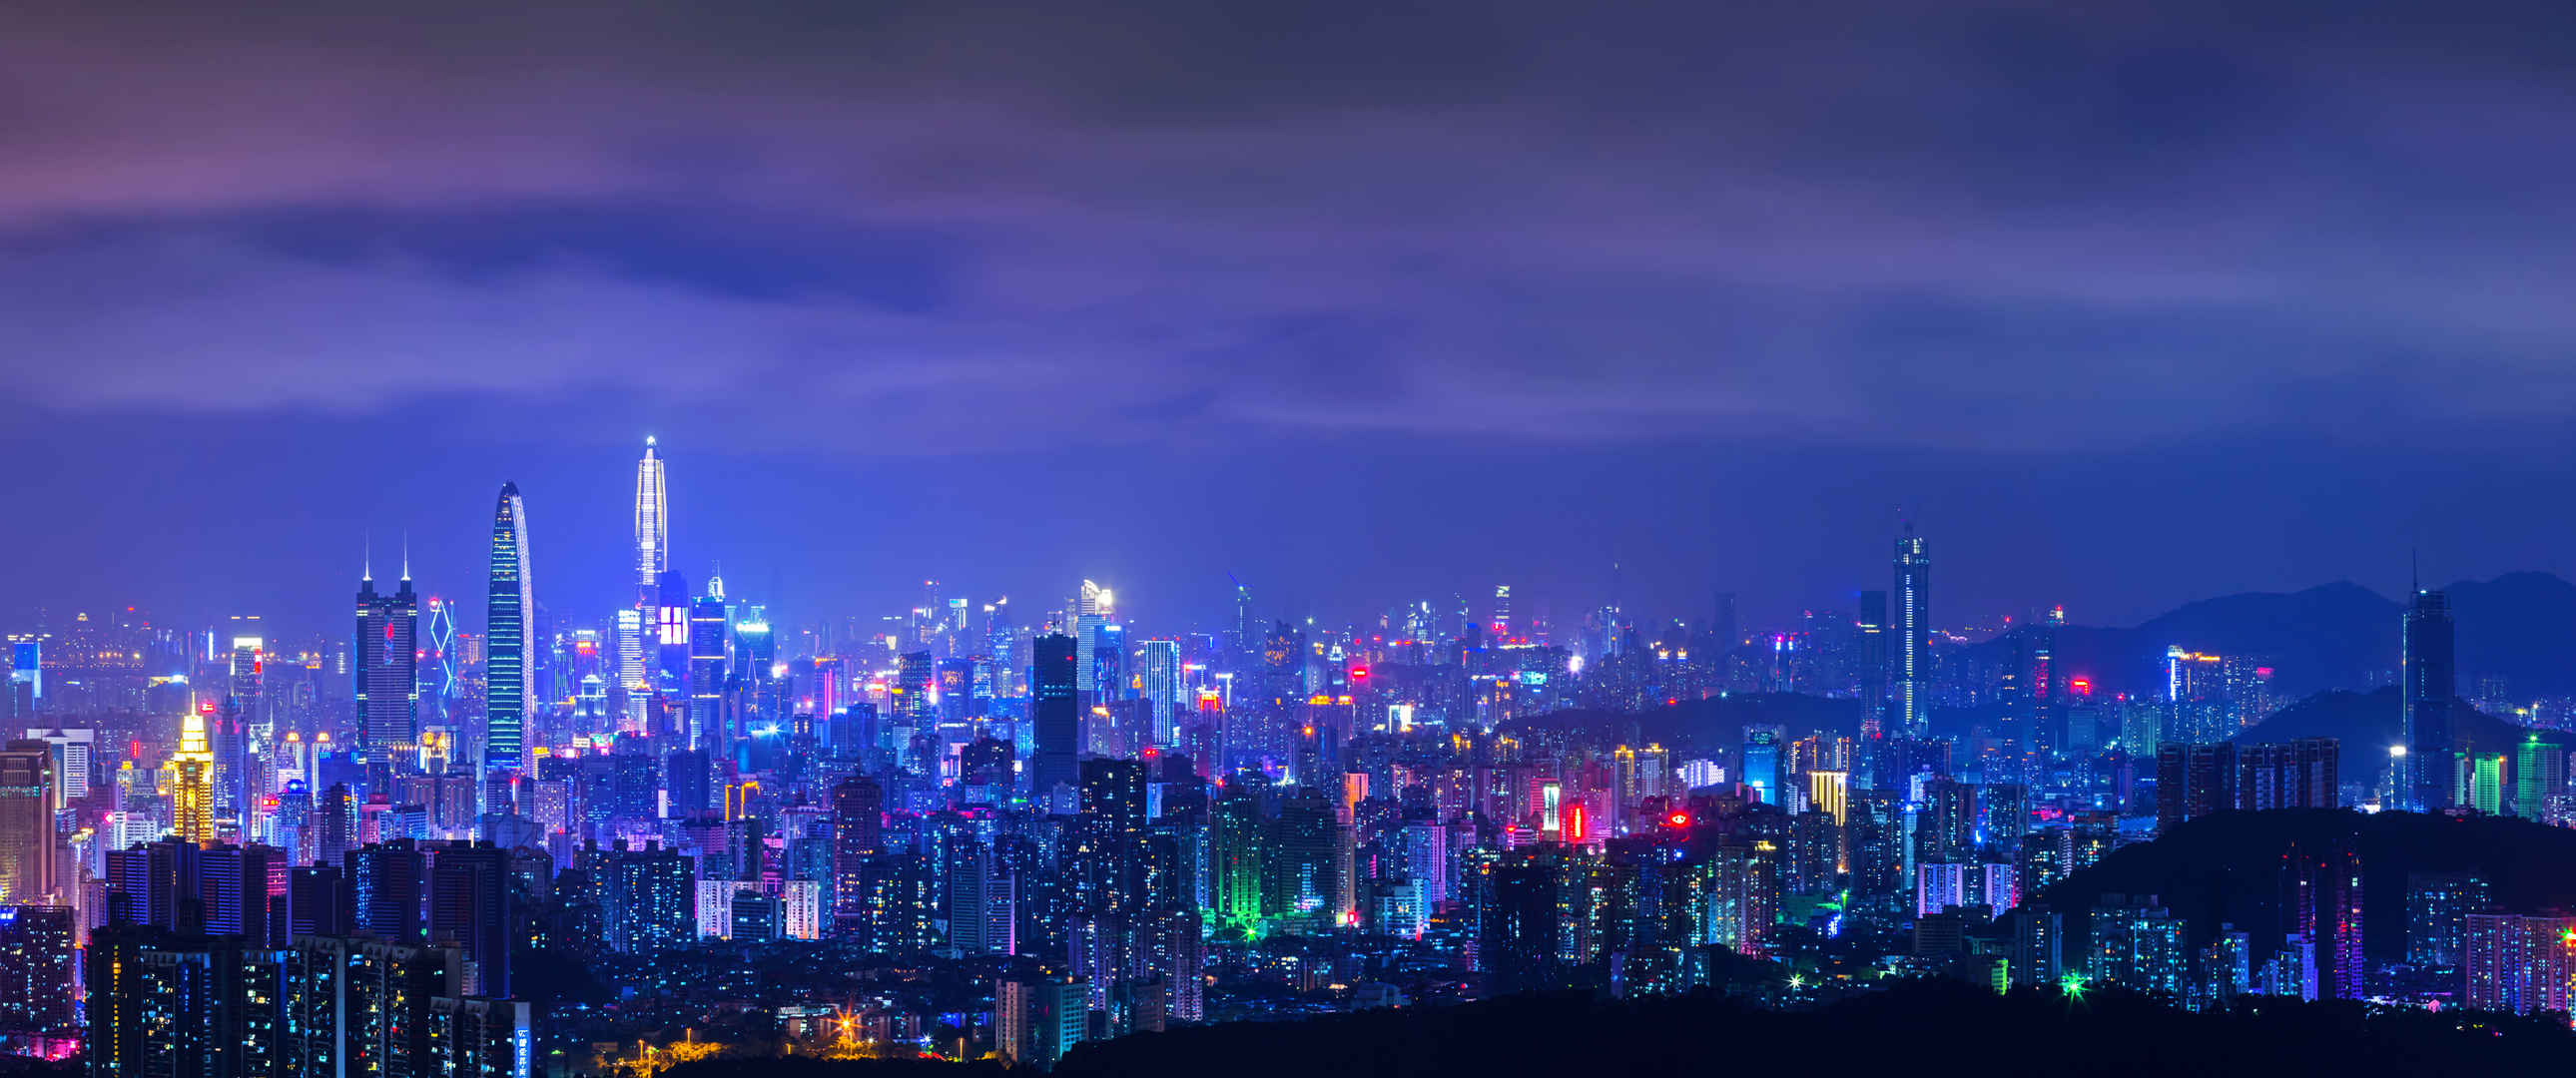 深圳城市夜景3440x1440壁纸-